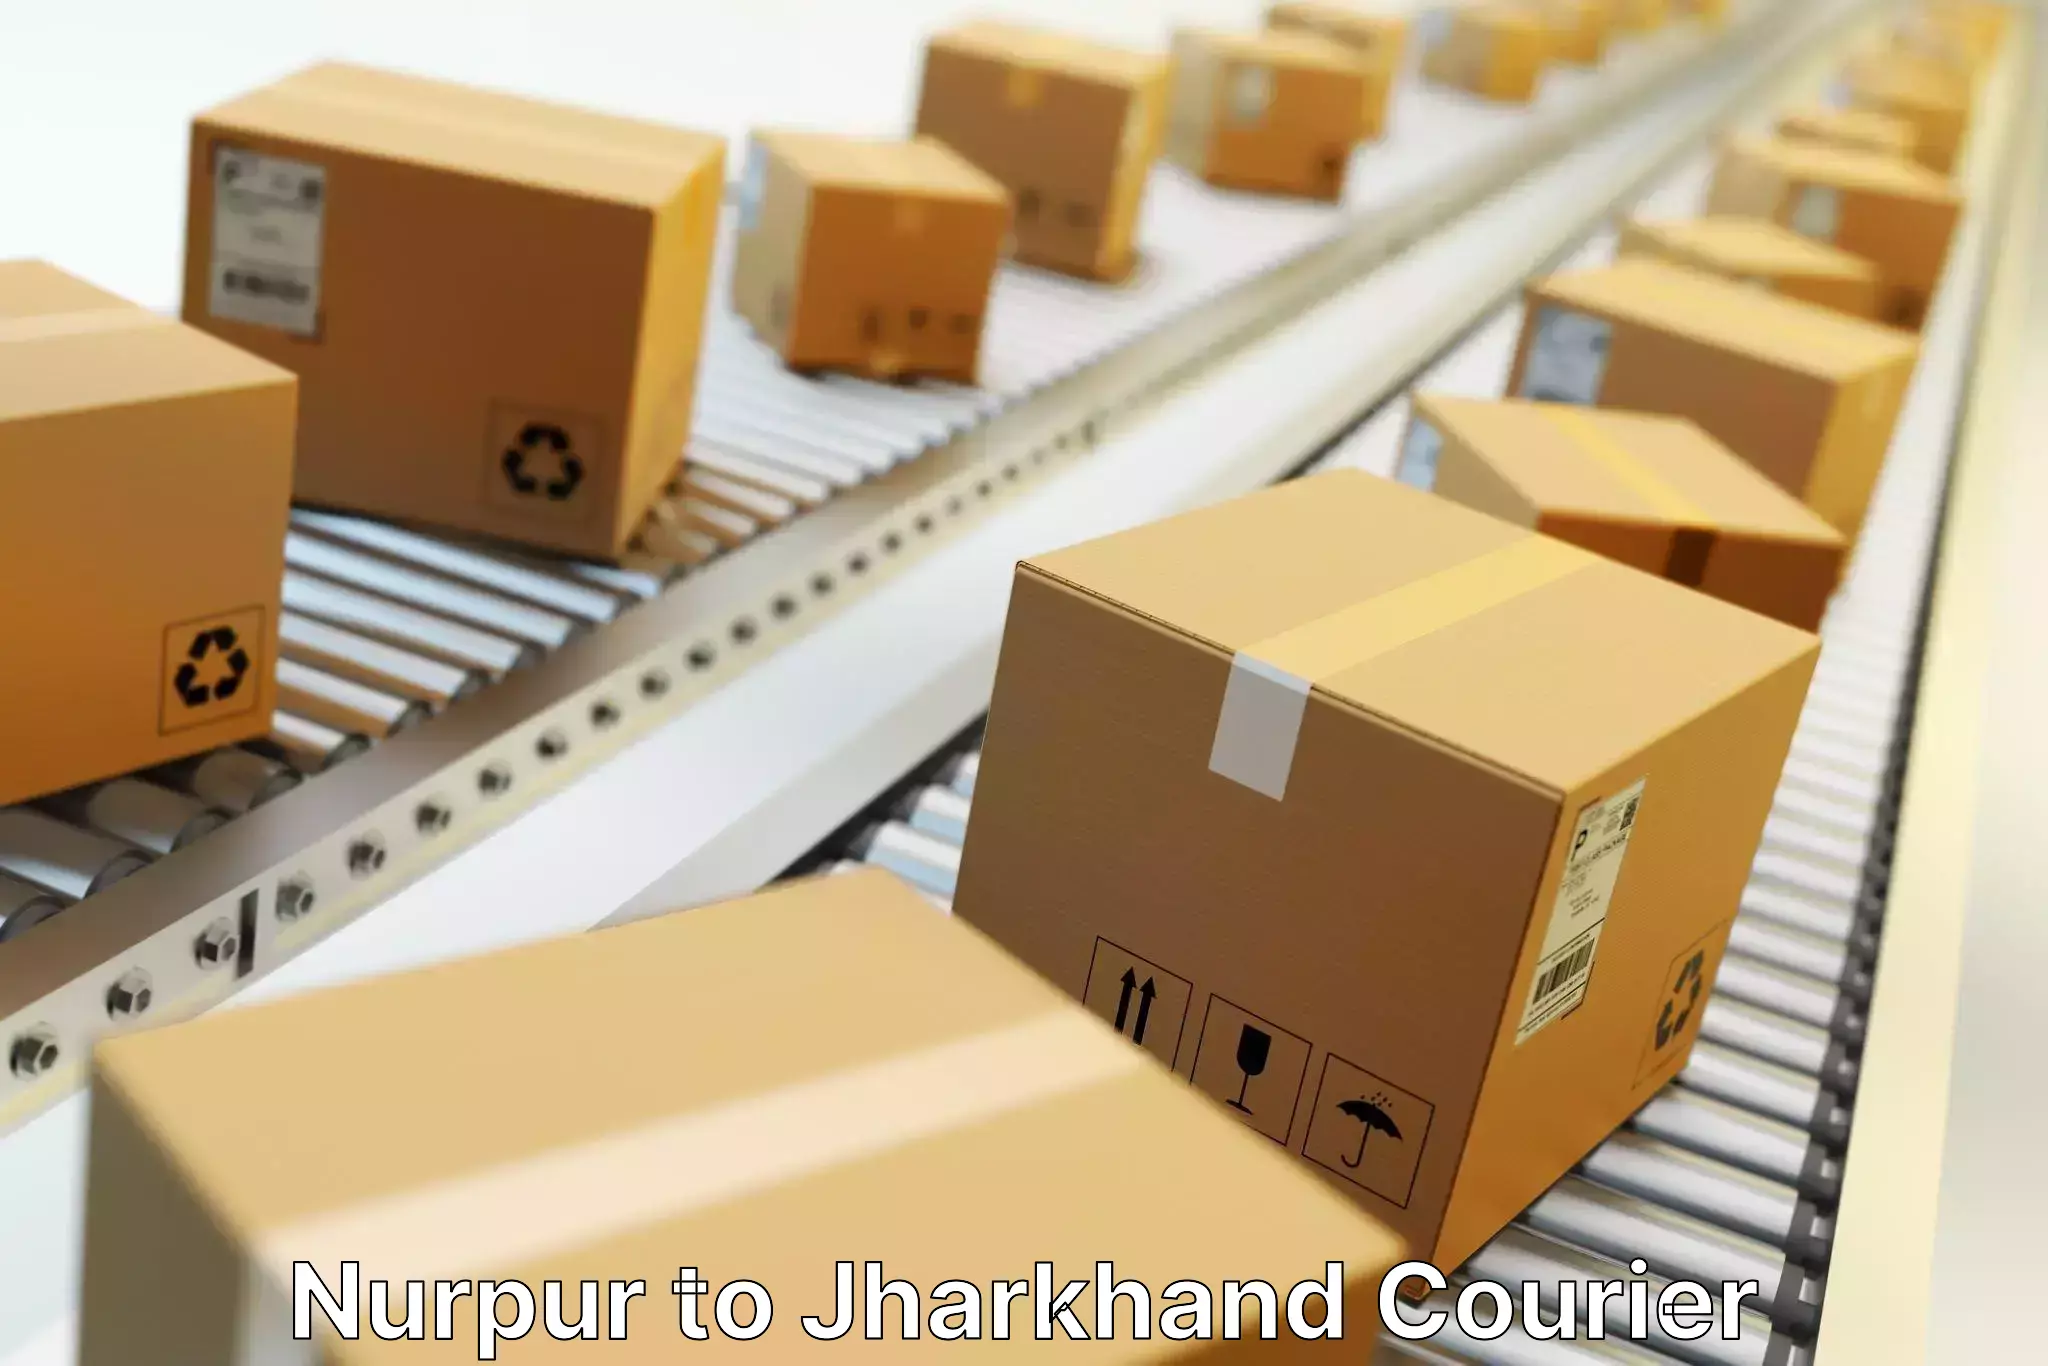 Cash on delivery service Nurpur to NIT Jamshedpur